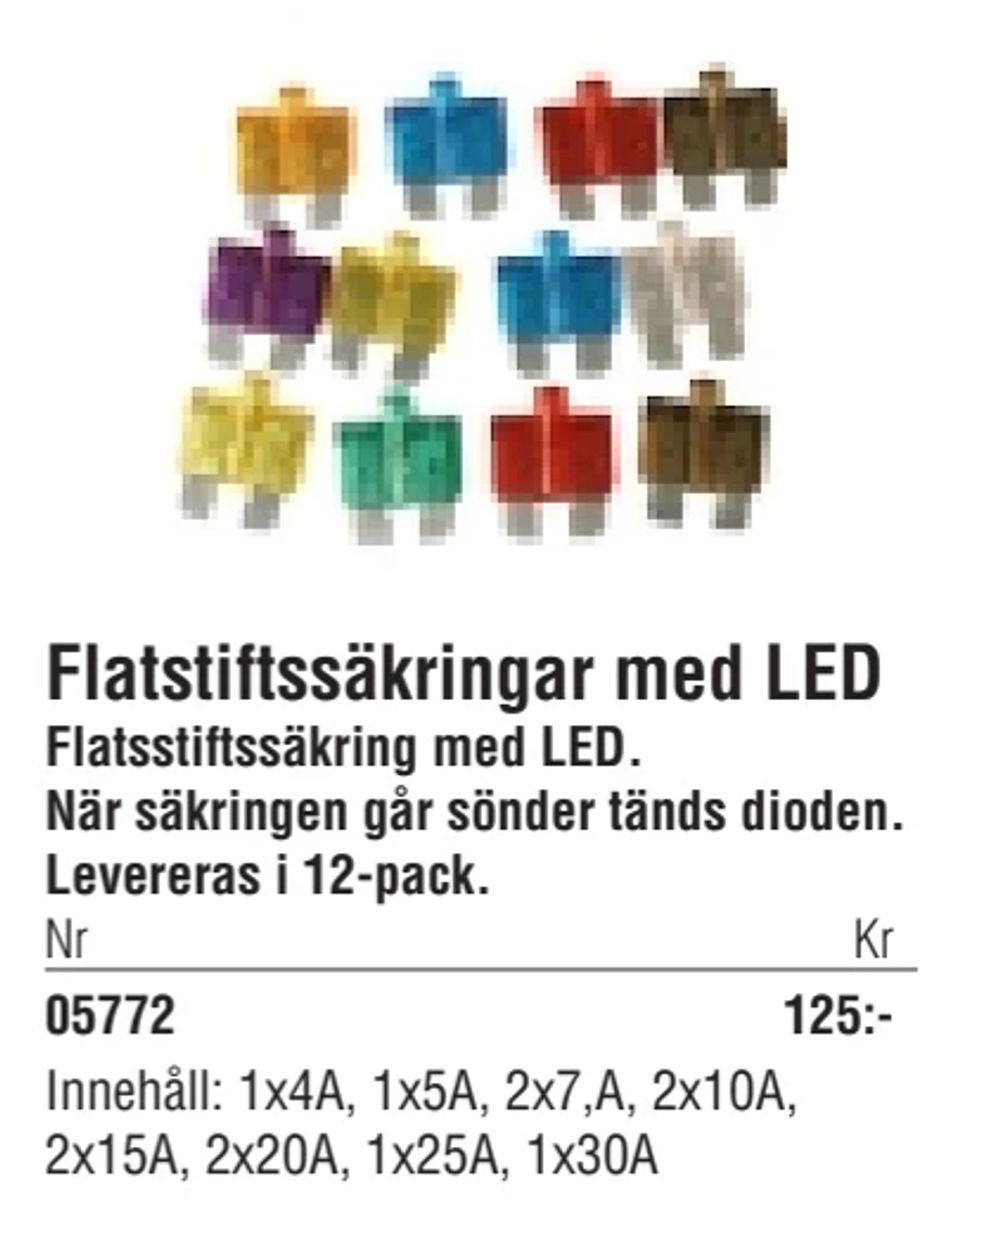 Erbjudanden på Flatstiftssäkringar med LED från Erlandsons Brygga för 125 kr